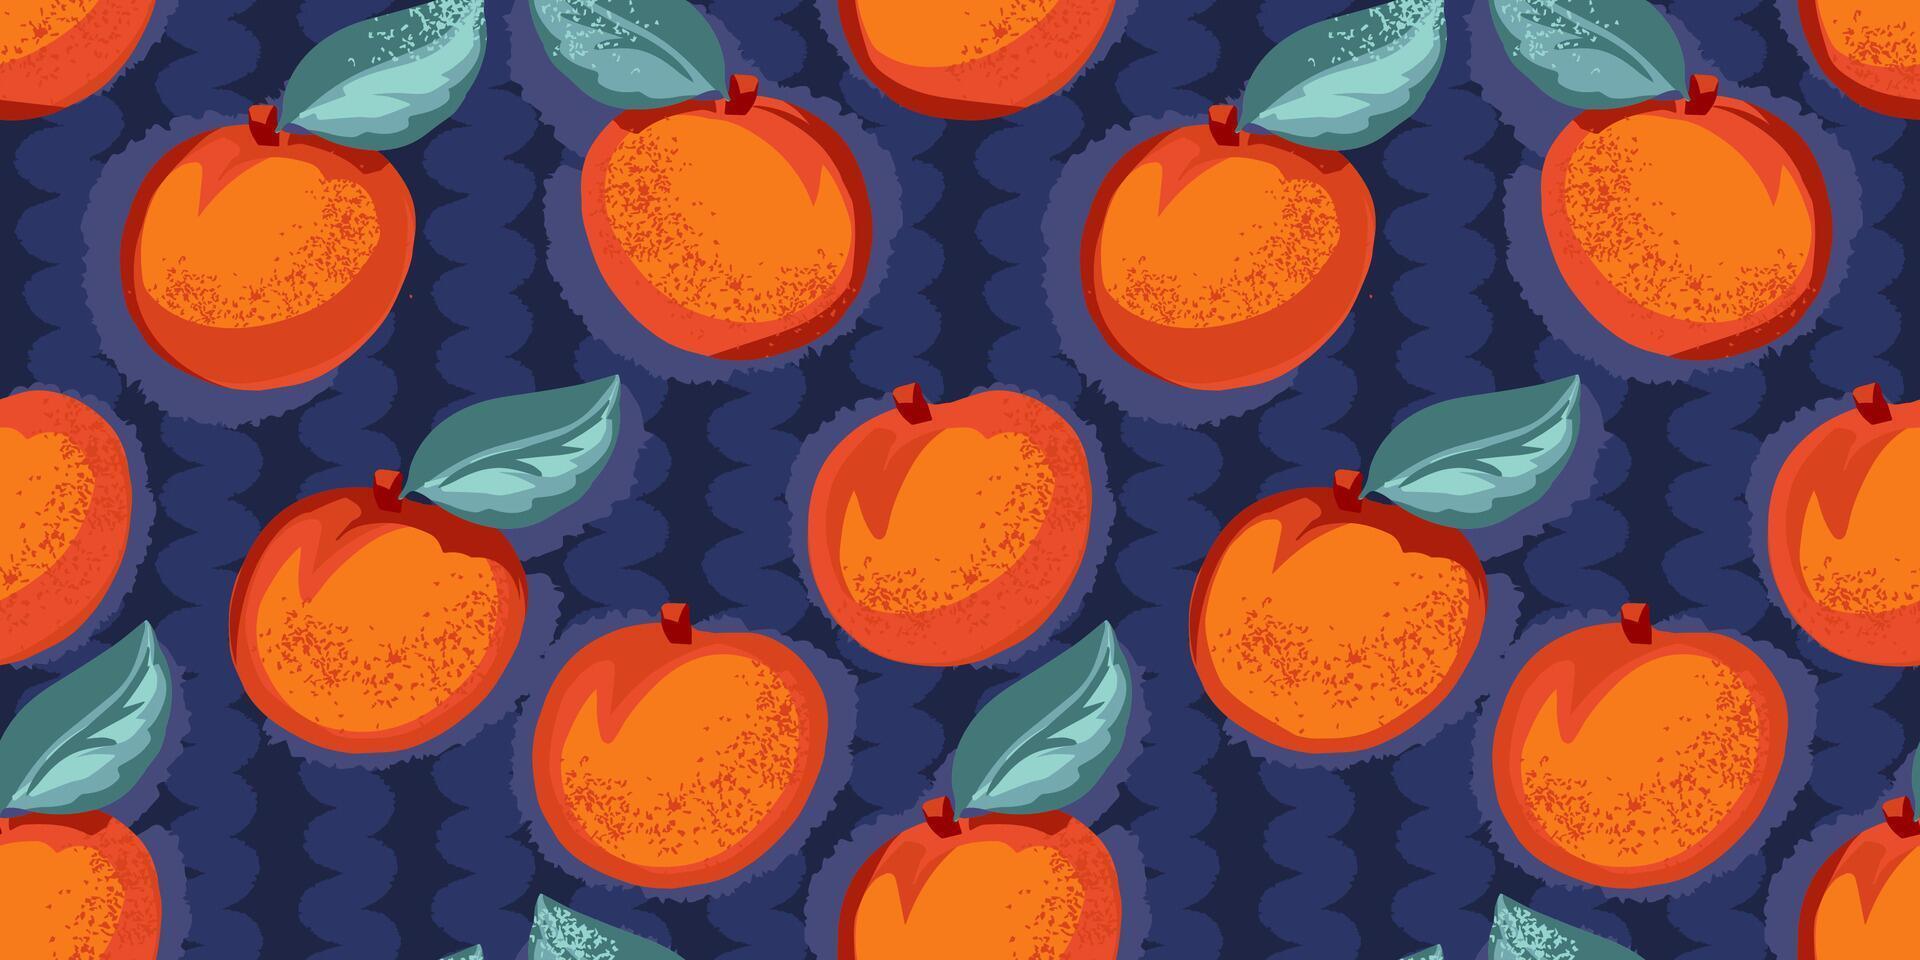 abstrakt stiliserade orange aprikos eller persika med löv sömlös mönster. vektor hand dragen skiss. ljus illustration frukt mönstrad eller mörk blå randig bakgrund. mall för design, utskrift